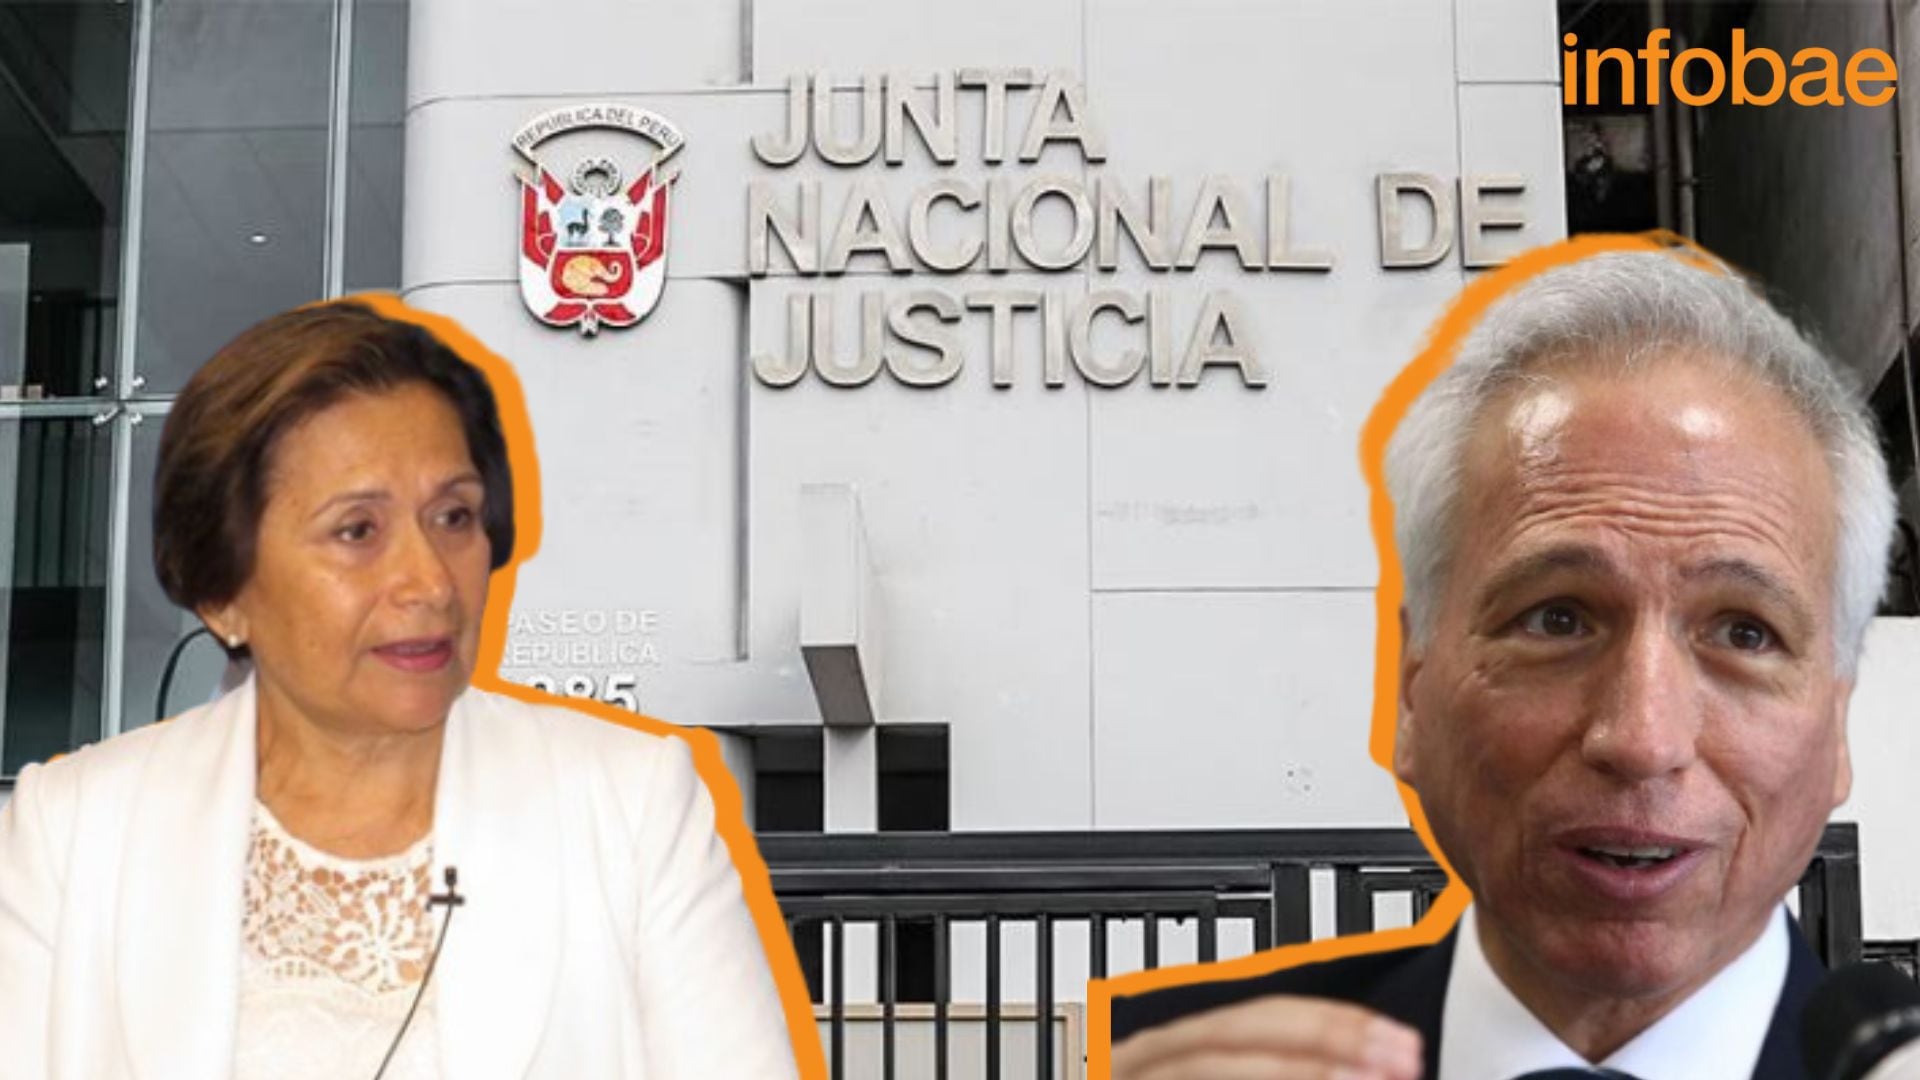 Inés Tello y Aldo Vásquez se reincorporan a la Junta Nacional de Justicia ante fallo judicial| Composición Infobae